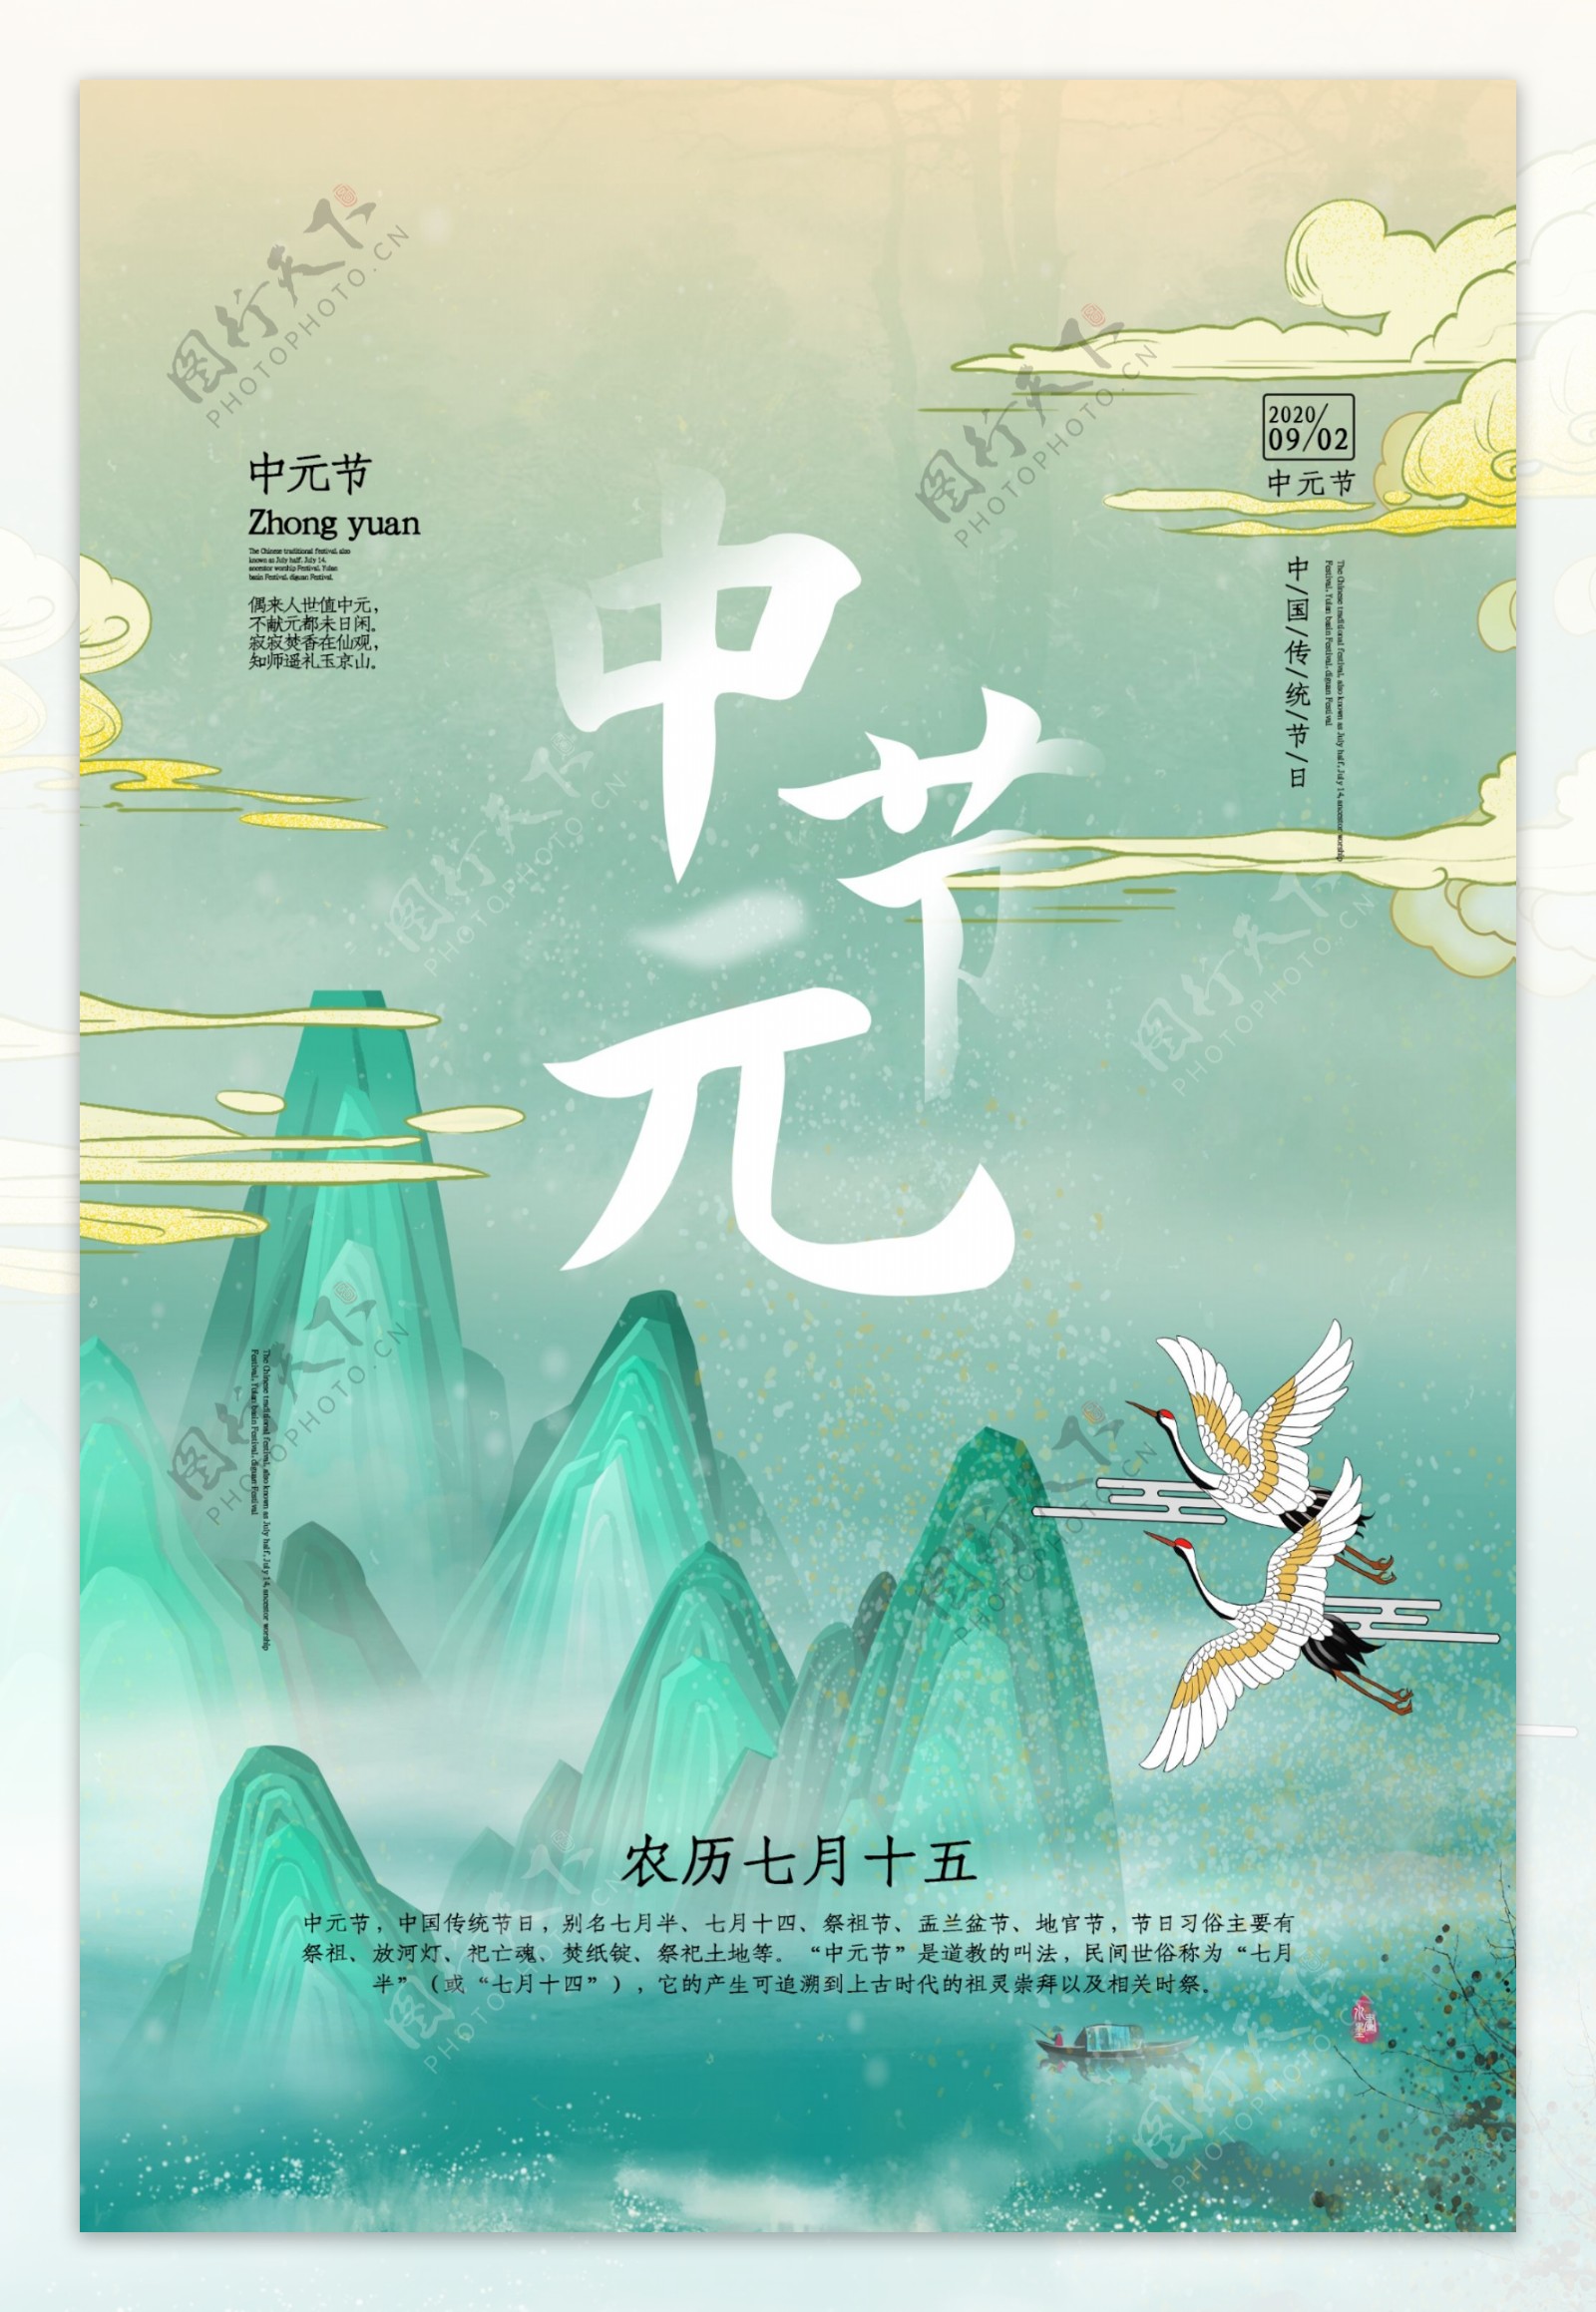 中元节传统节日促销活动宣传海报